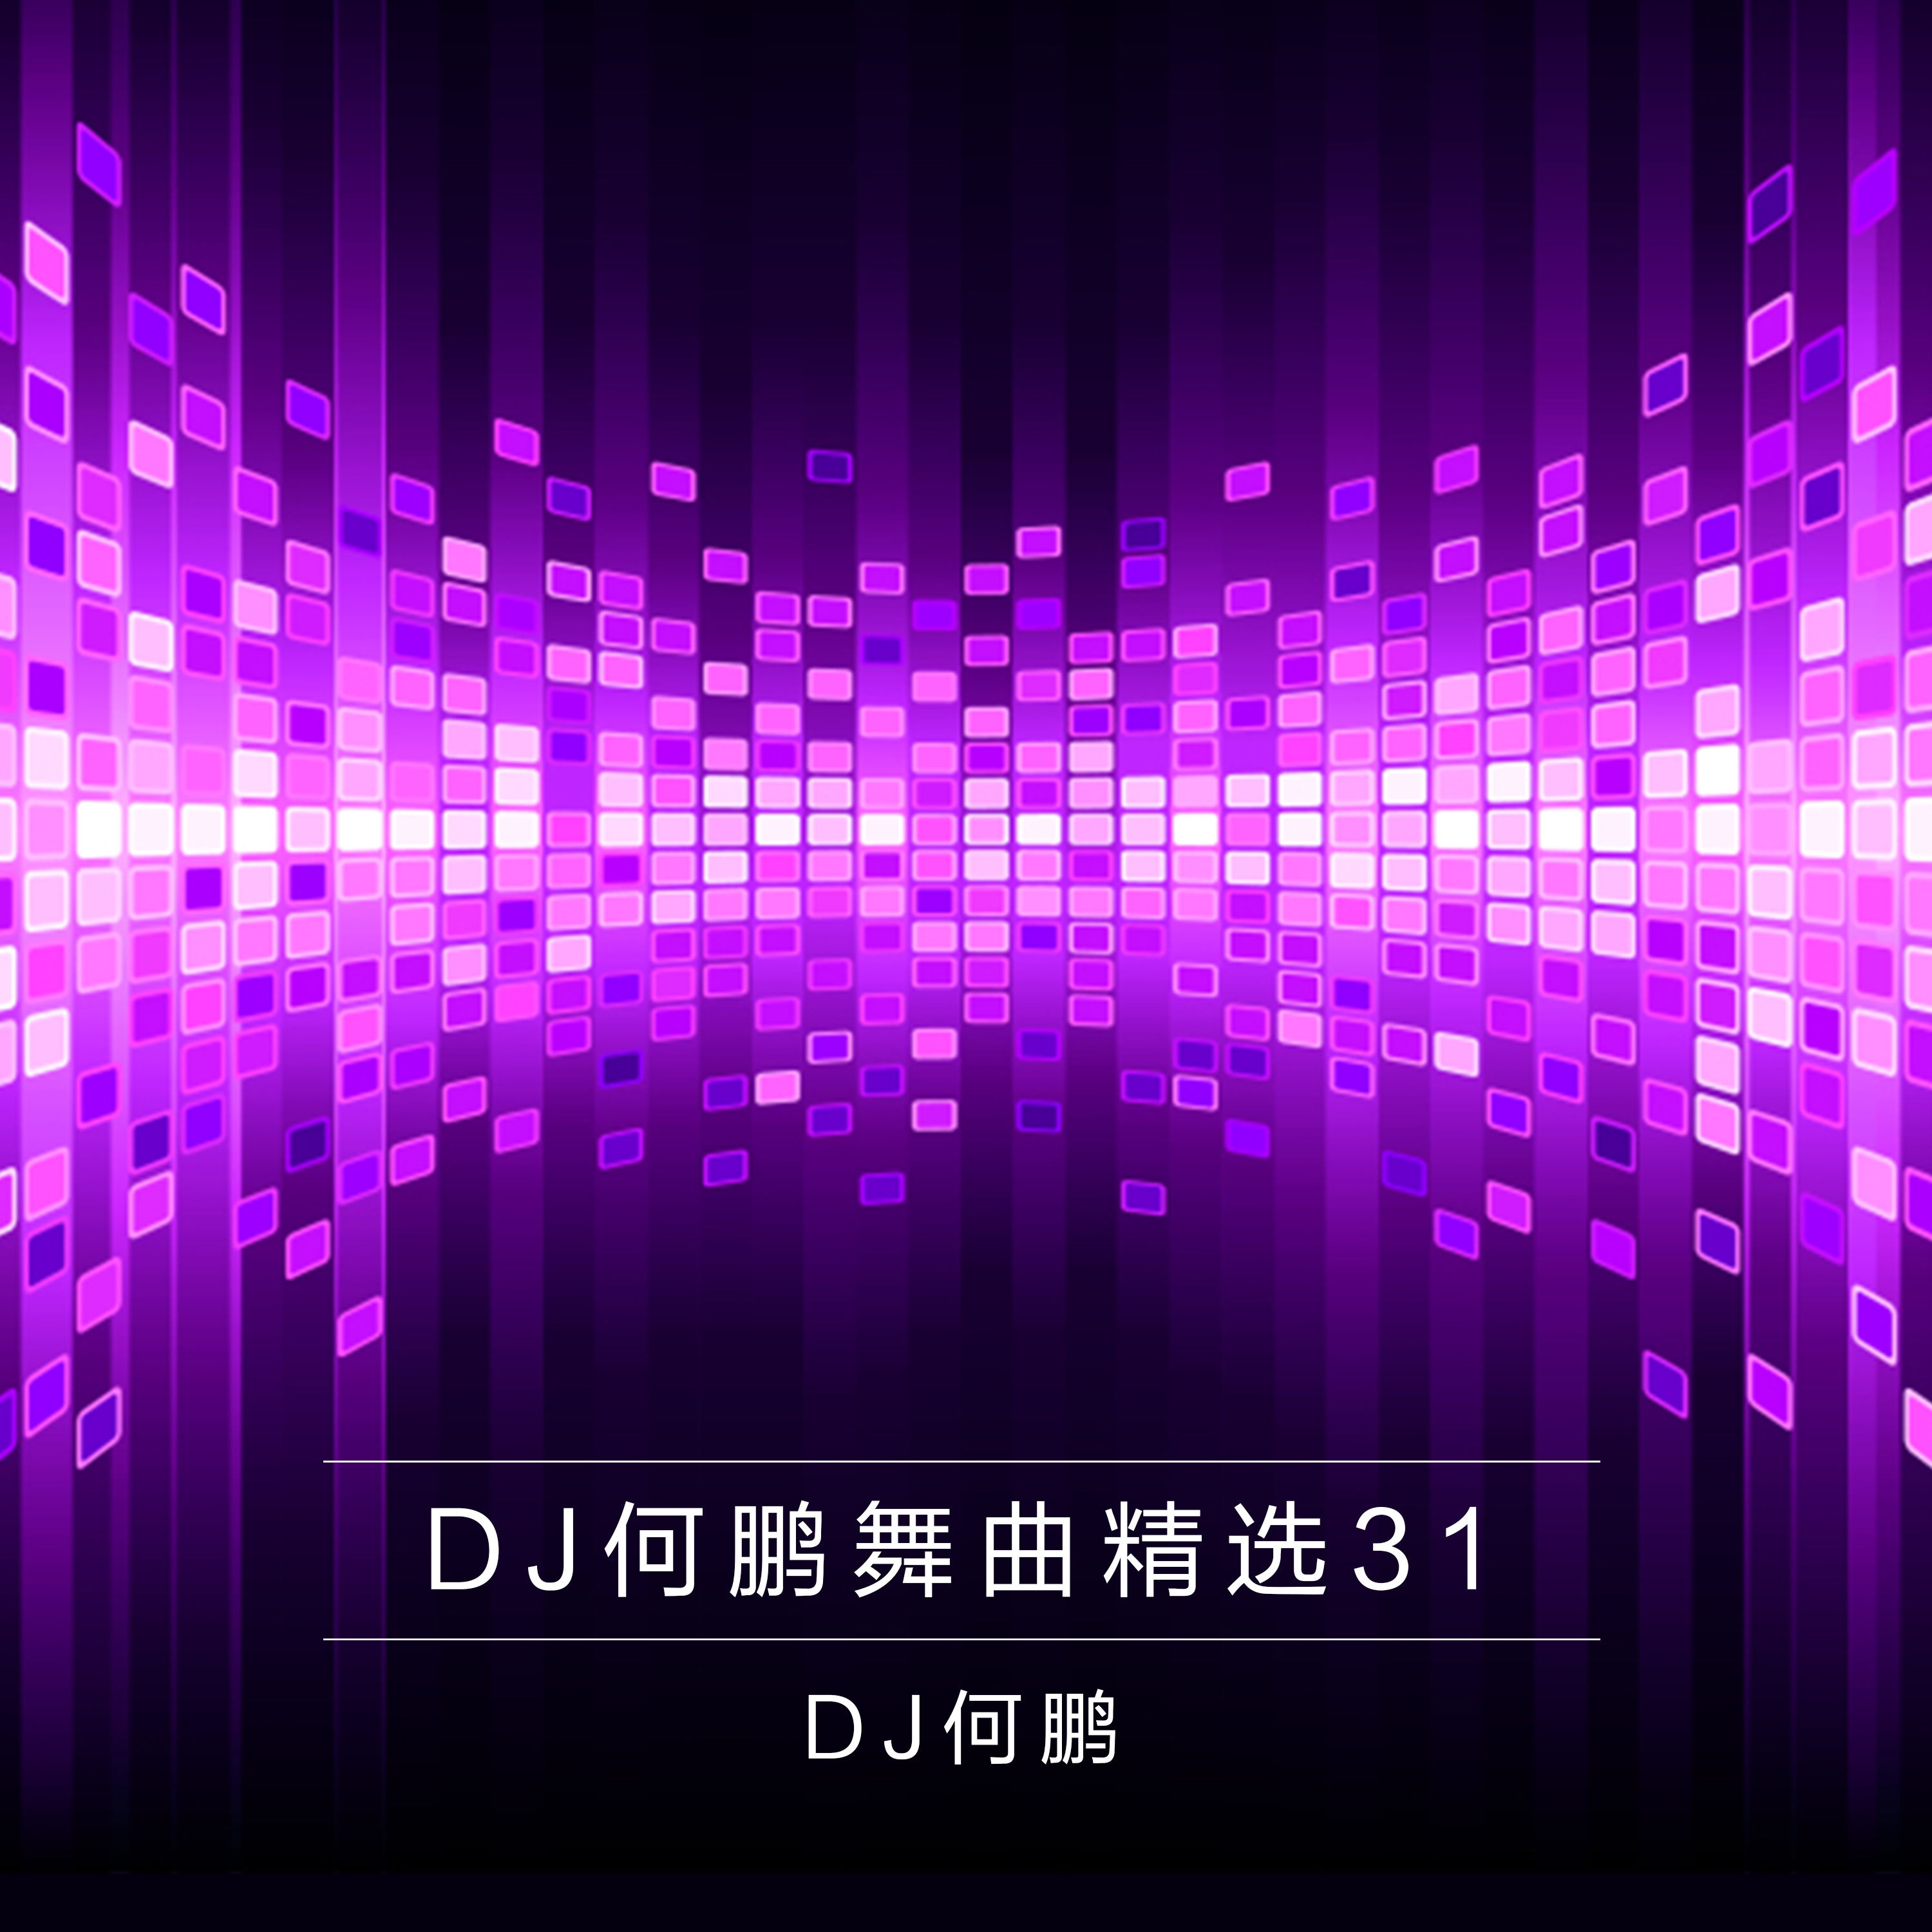 wo he xiao huo ban dou jing dai le DJ Version